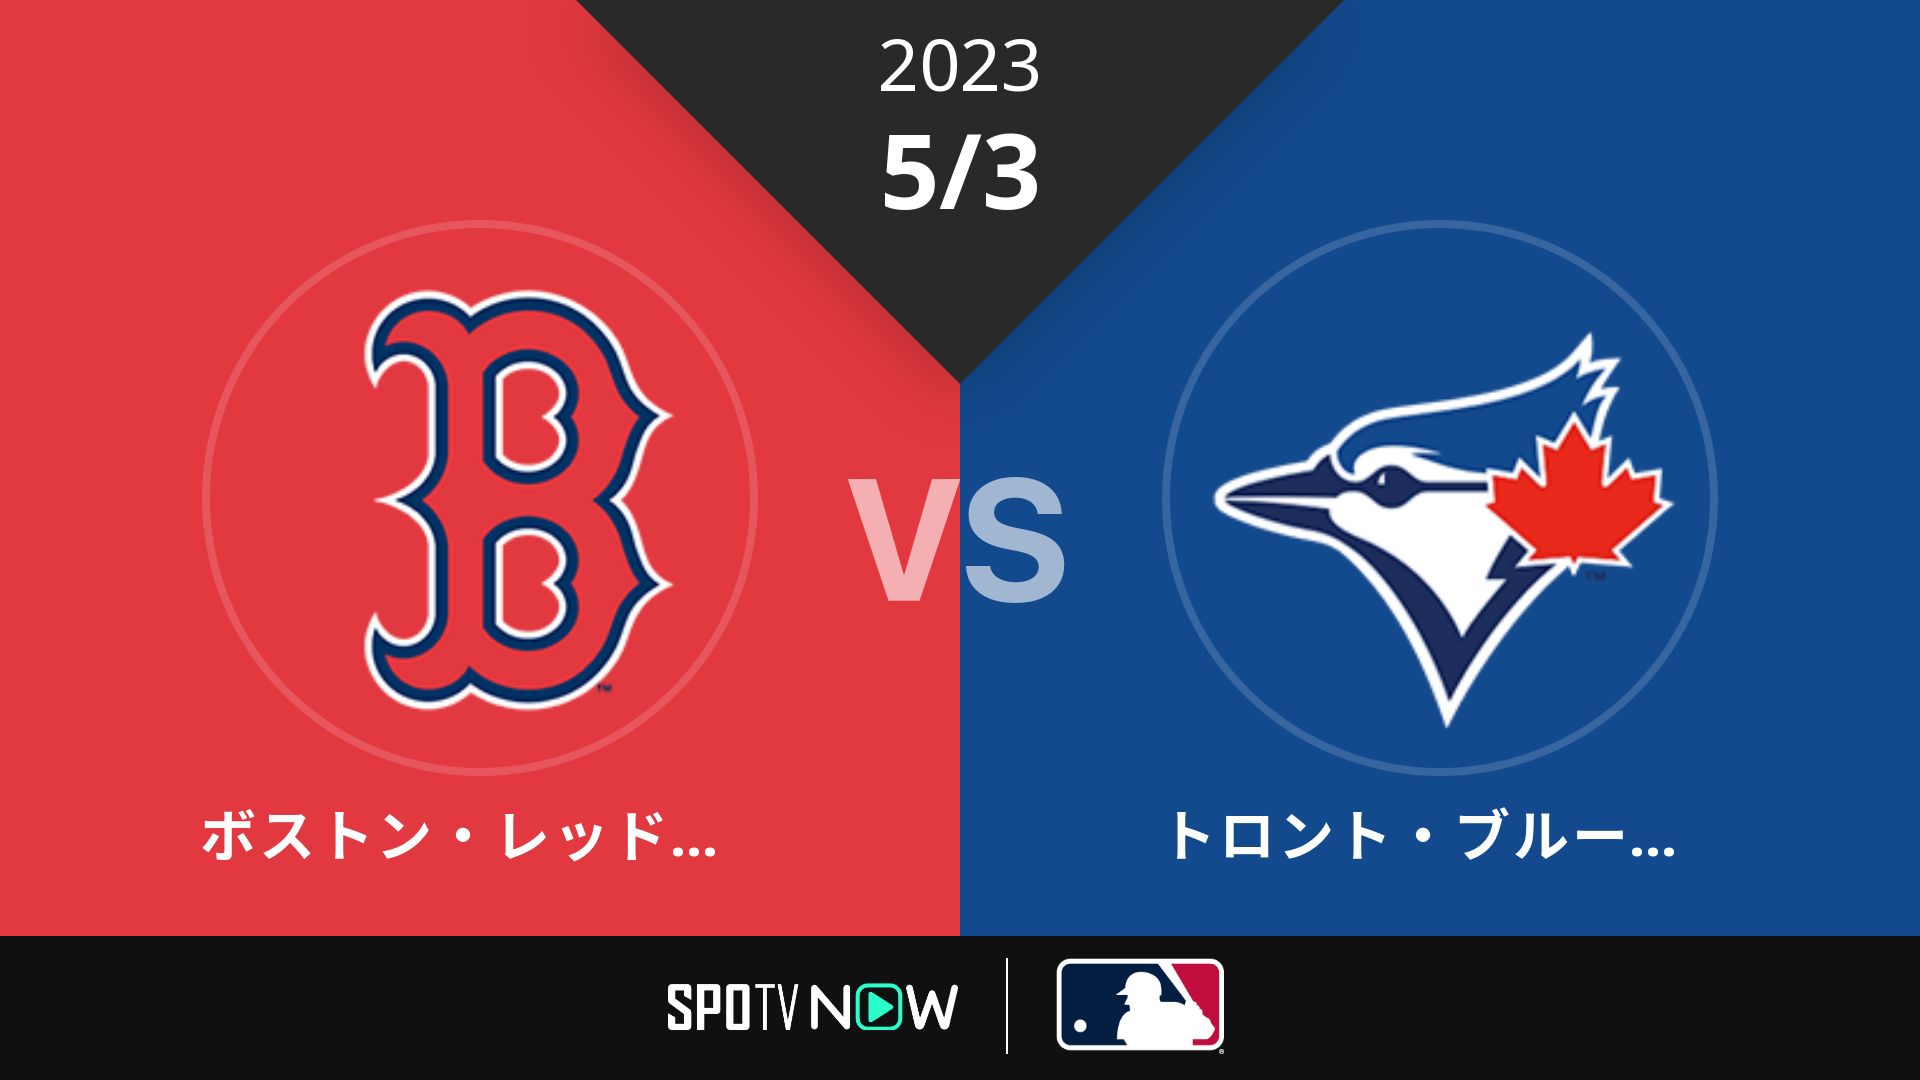 2023/5/3 Rソックス vs ブルージェイズ [MLB]